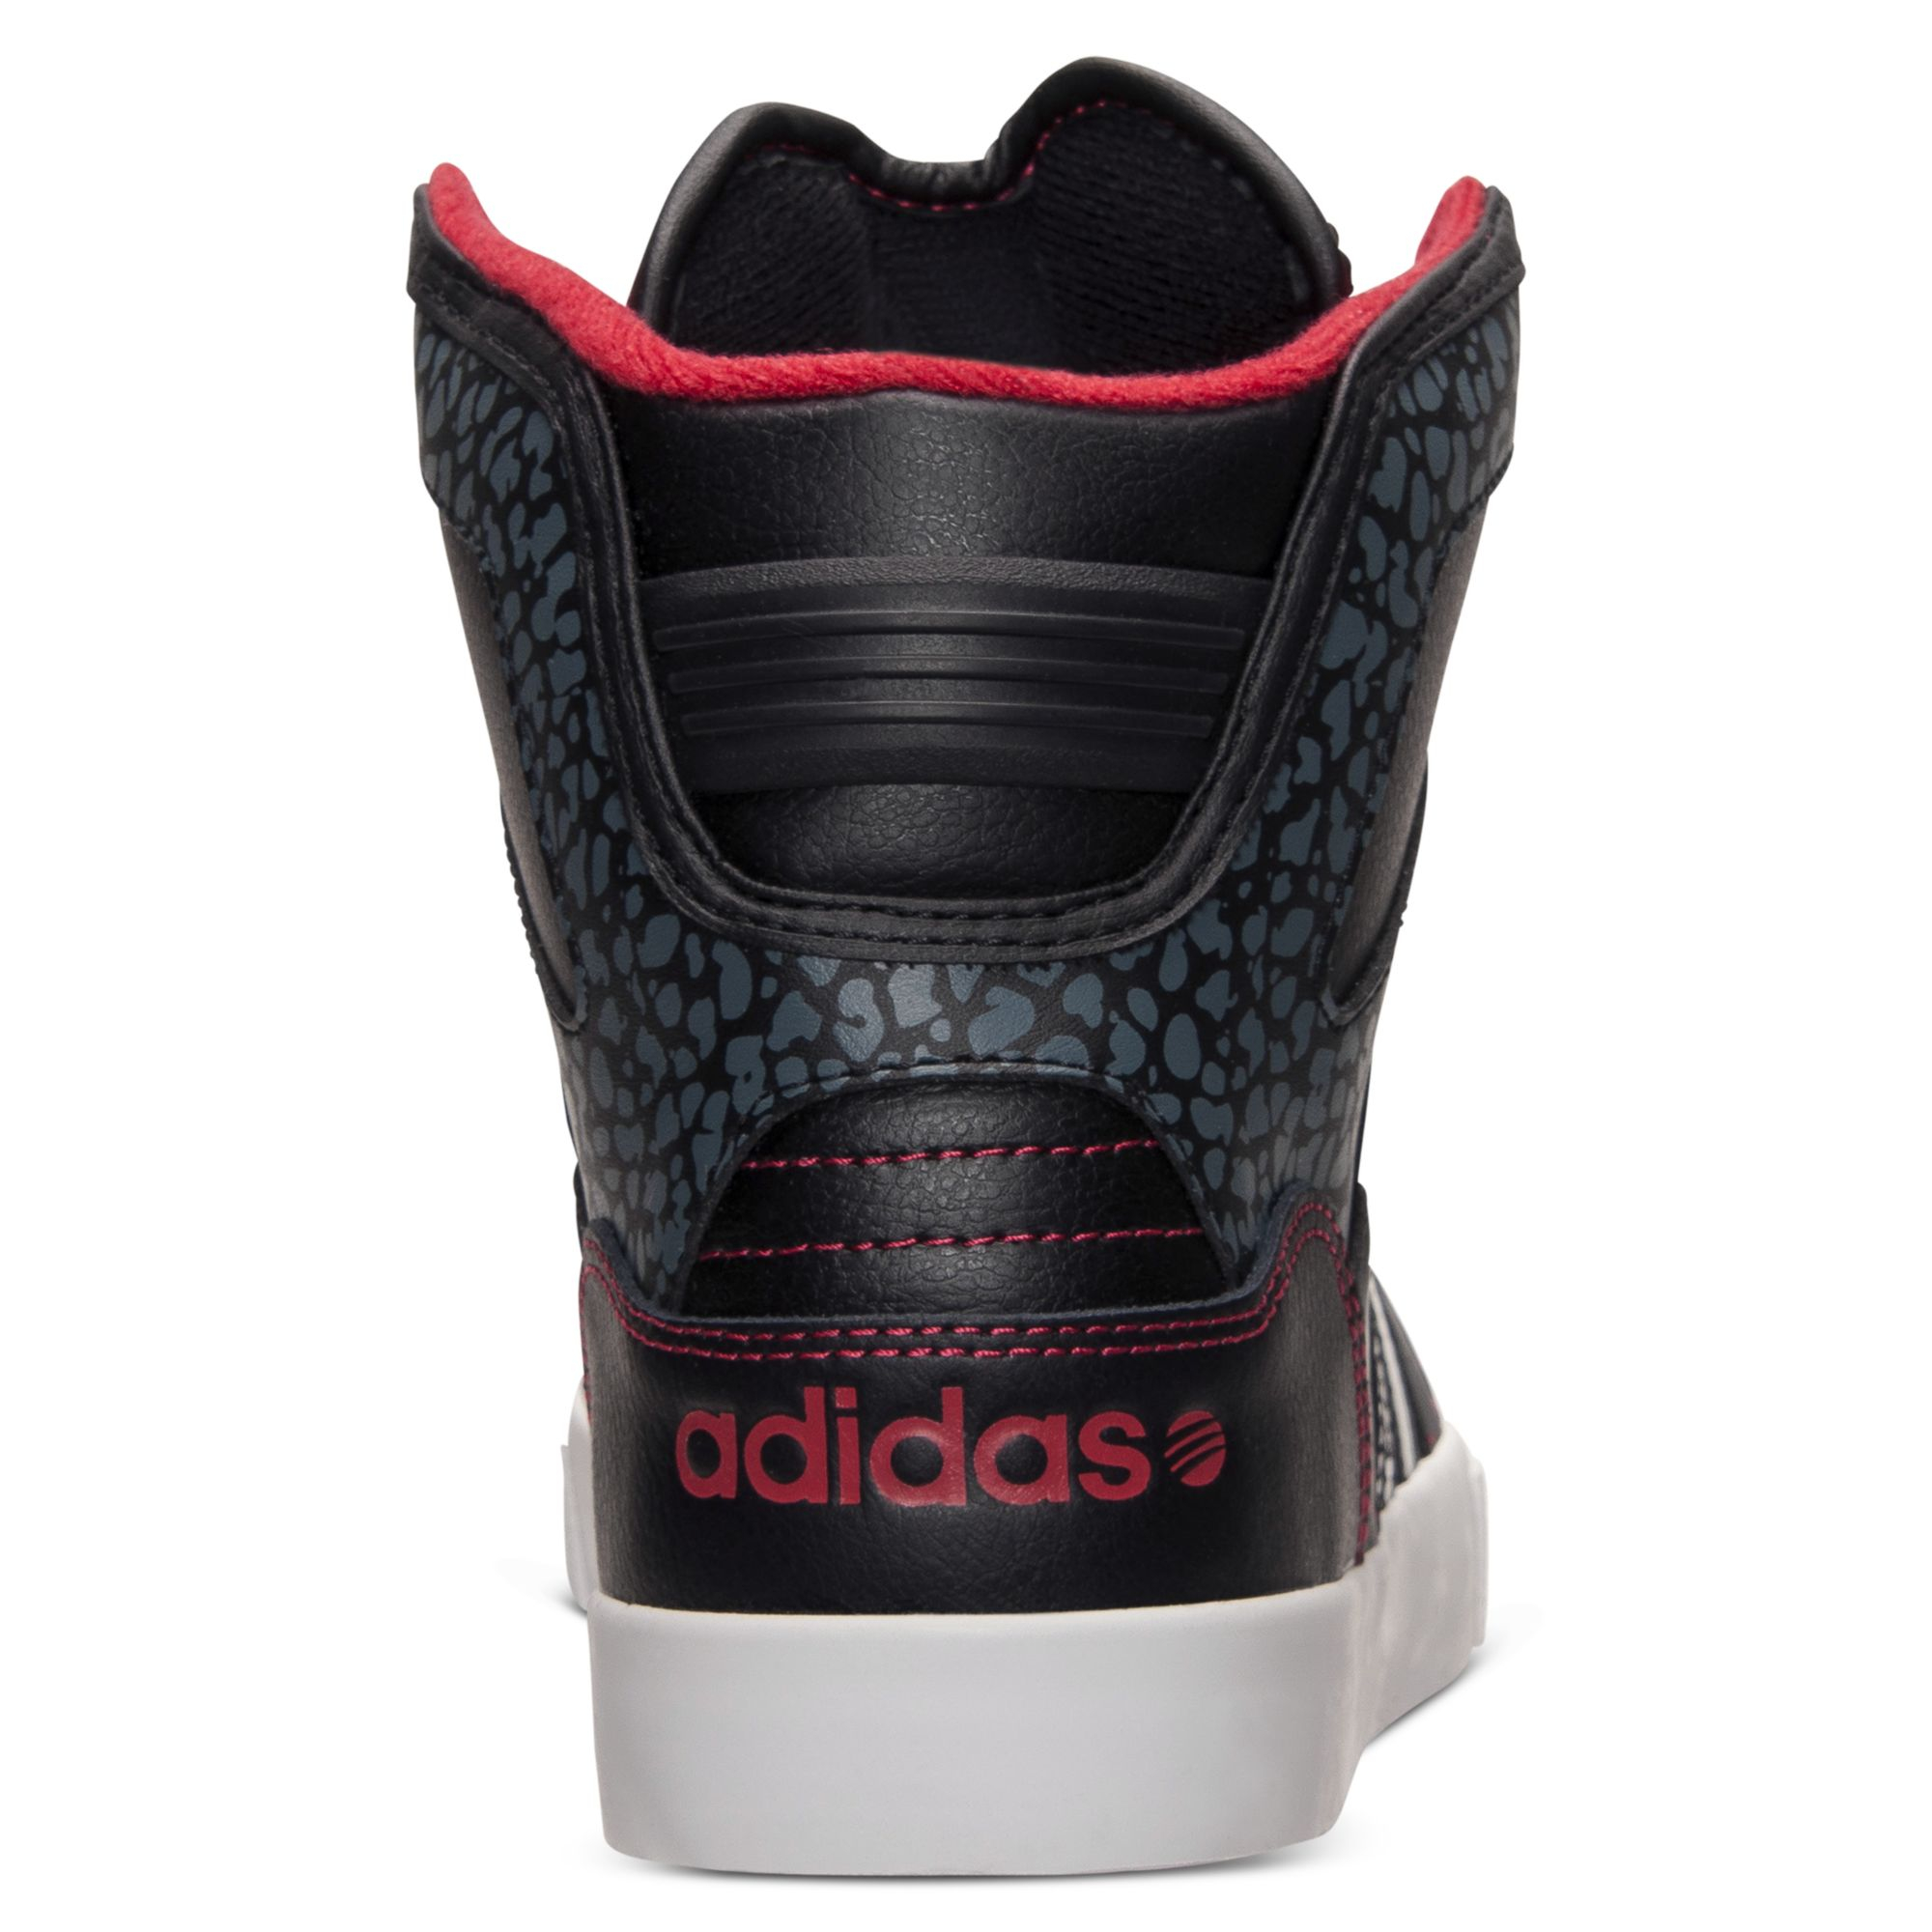 Schoenen Sneakers High top sneaker Adidas High top sneaker zwart casual uitstraling 